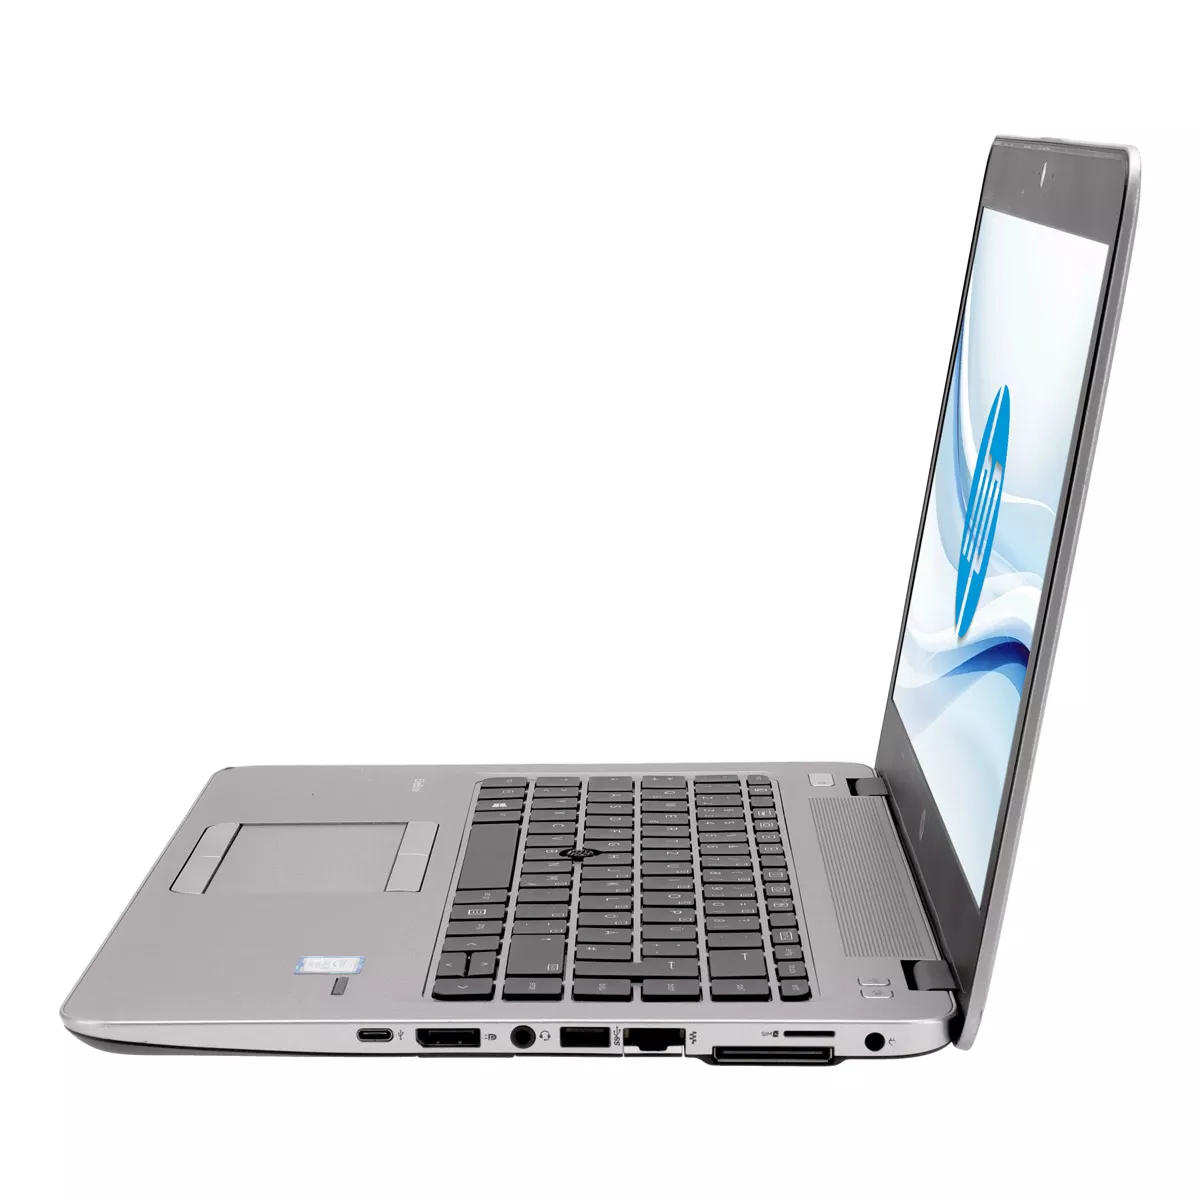 HP EliteBook 840 G4 Core i5 7300U Full-HD 500 GB M.2 SSD Webcam A